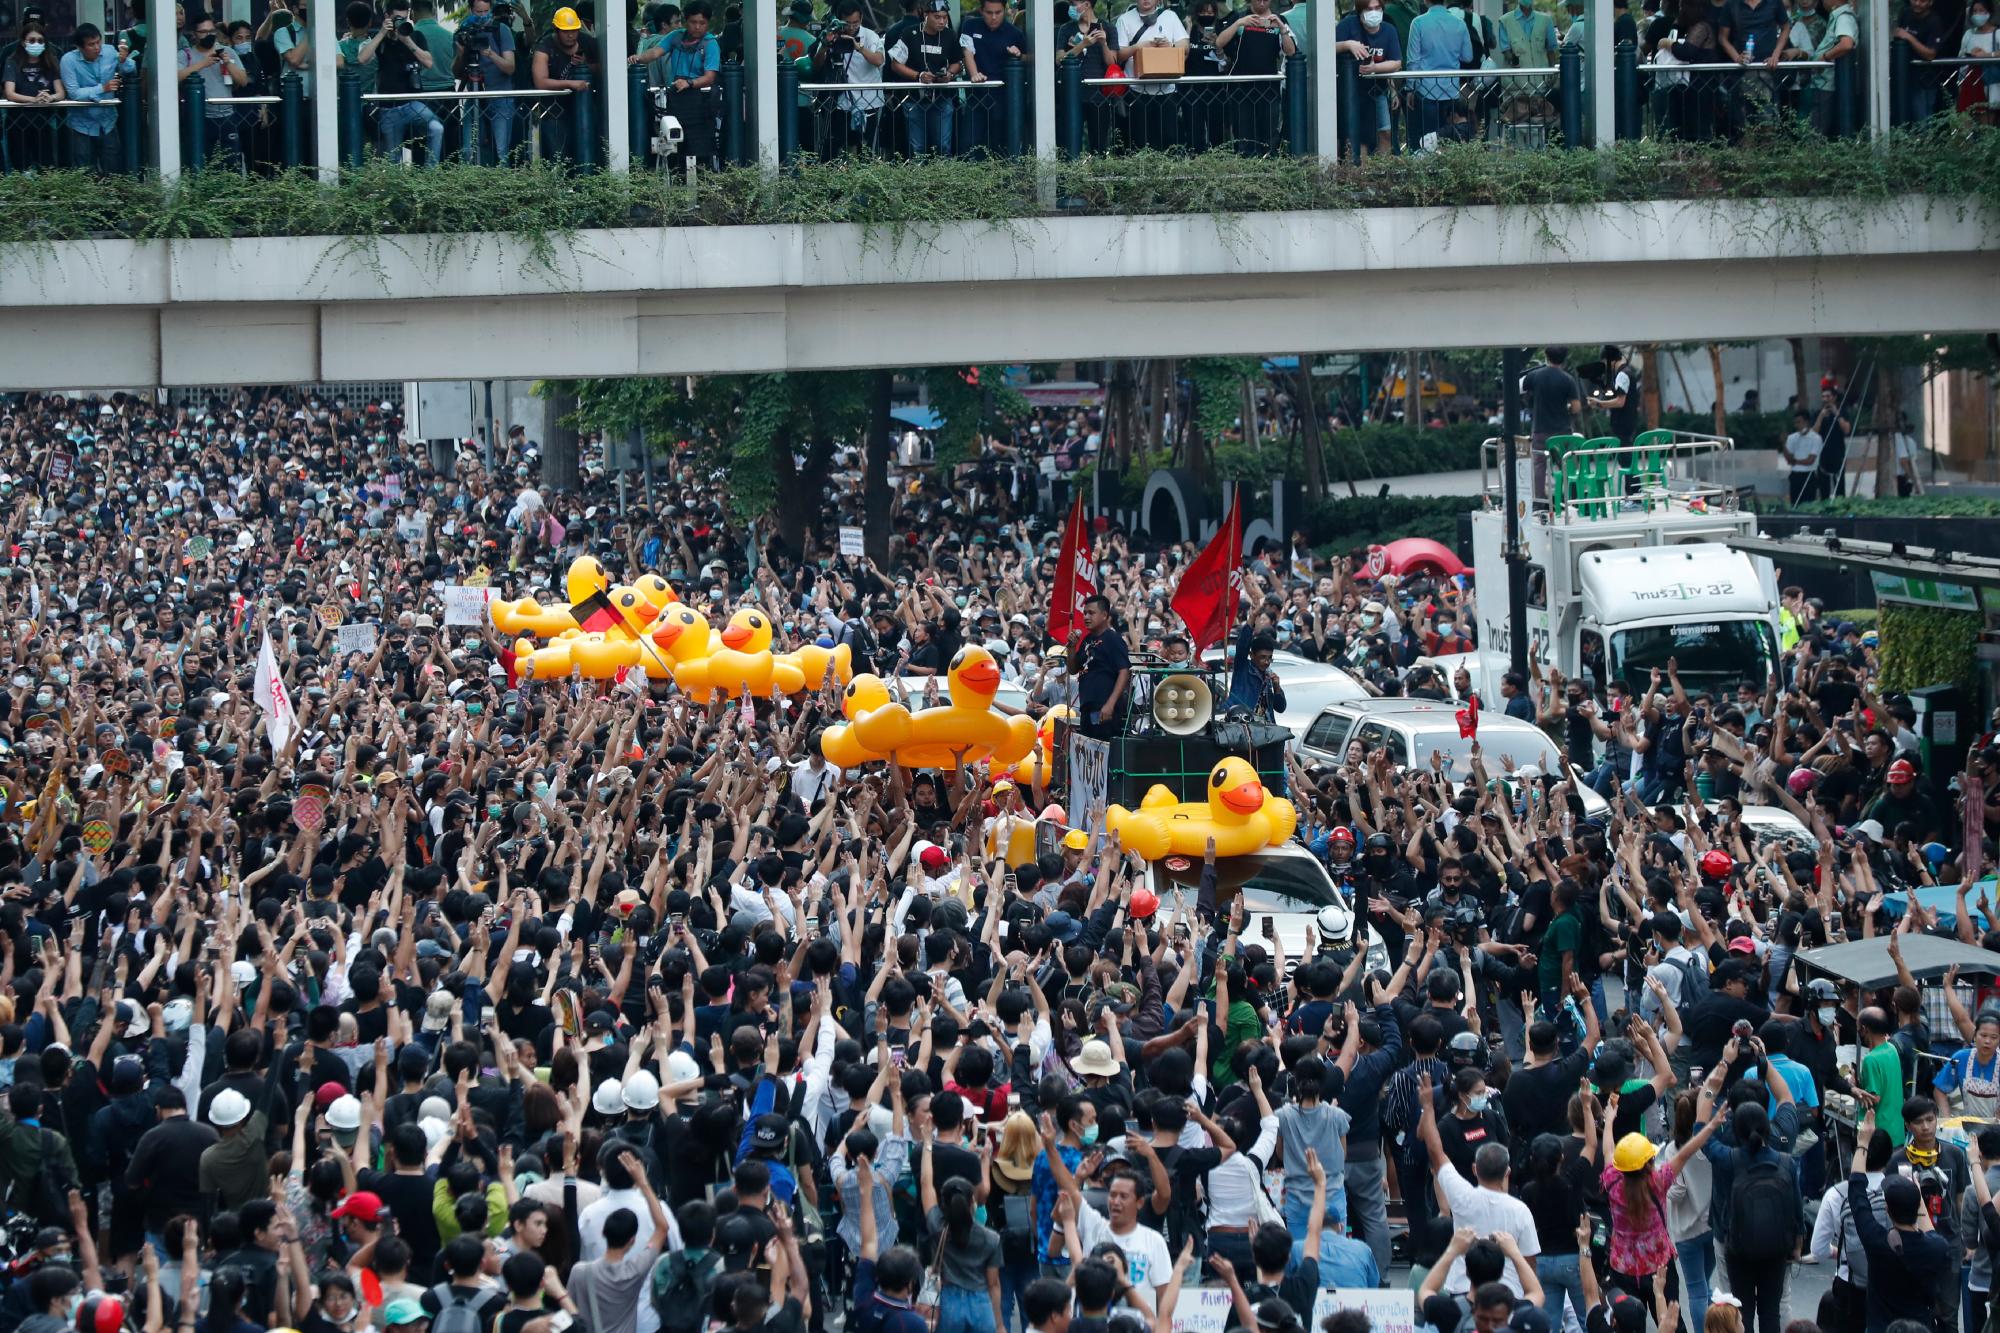 Grandes patos inflables se pasean entre la multitud en un mitin a favor de la democracia en Bangkok, Tailandia, el miércoles 18 de noviembre de 2020. La policía en la capital de Tailandia se preparó para posibles problemas el miércoles, un día después de que se realizara una protesta de manifestantes a favor de la democracia frente al Parlamento. empañado por la violencia que dejó decenas de heridos. 